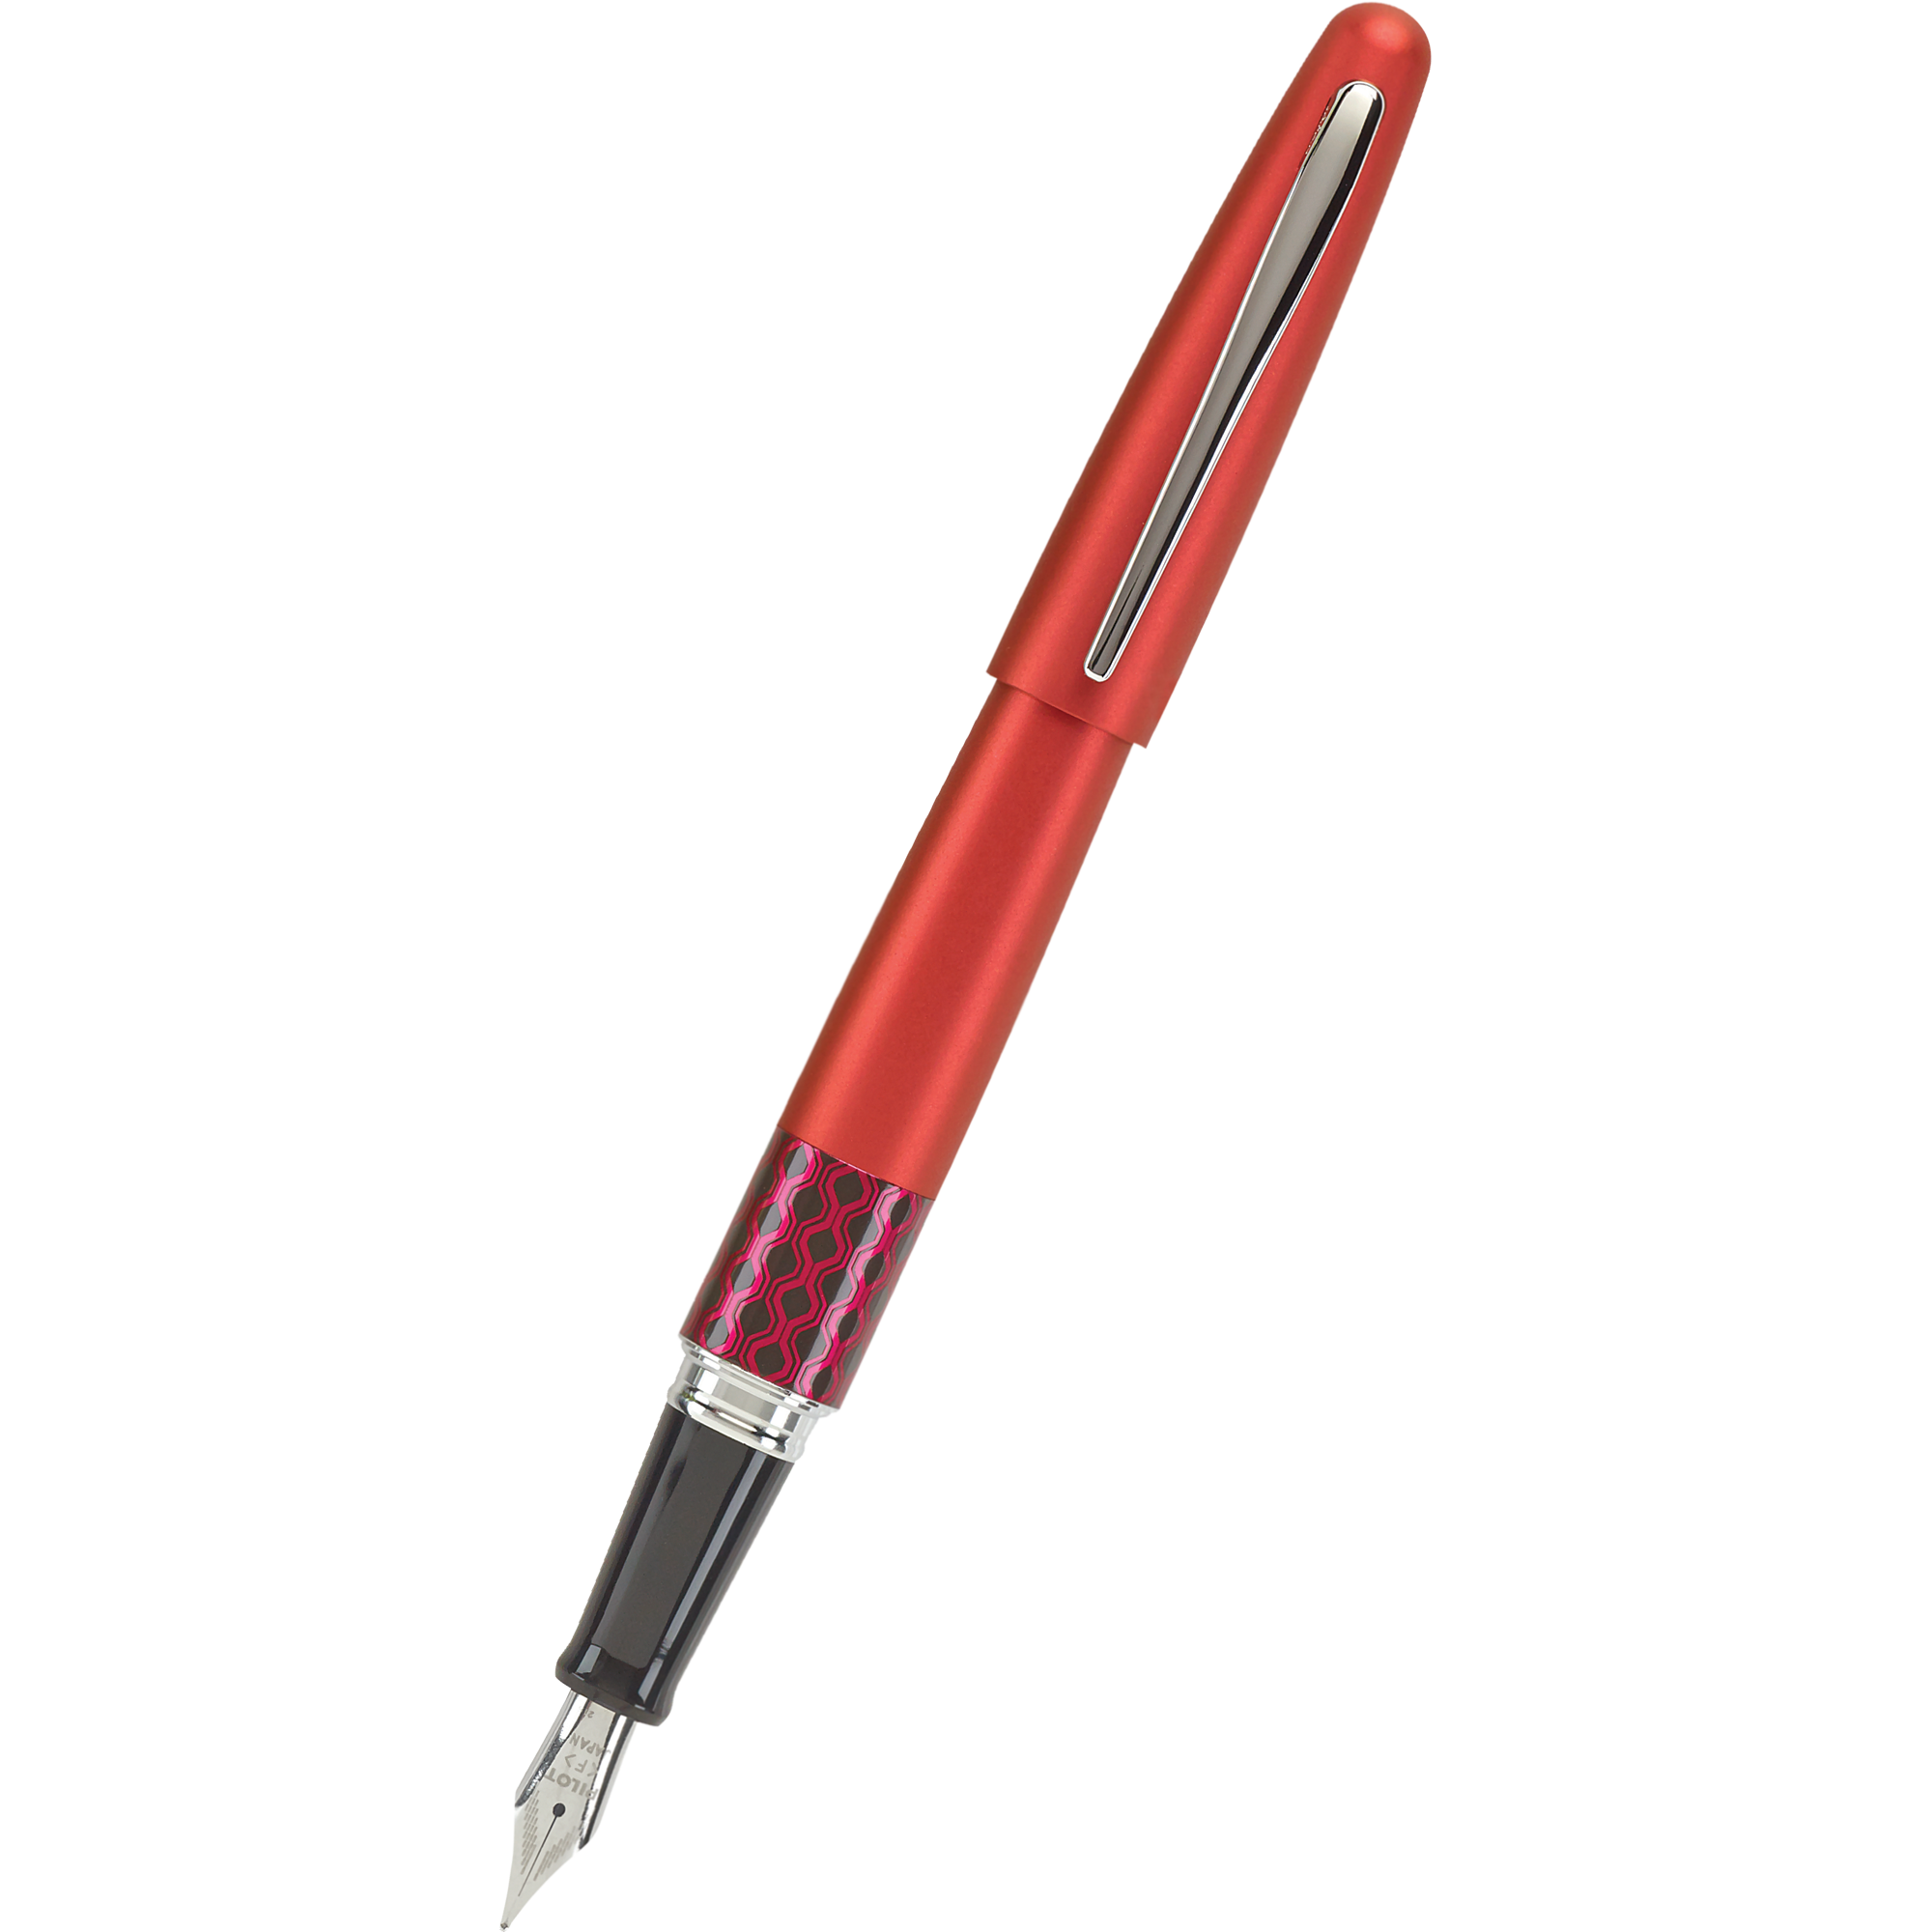 Pilot Fountain Pen - MR Collection - Retro Pop - Red-Pen Boutique Ltd